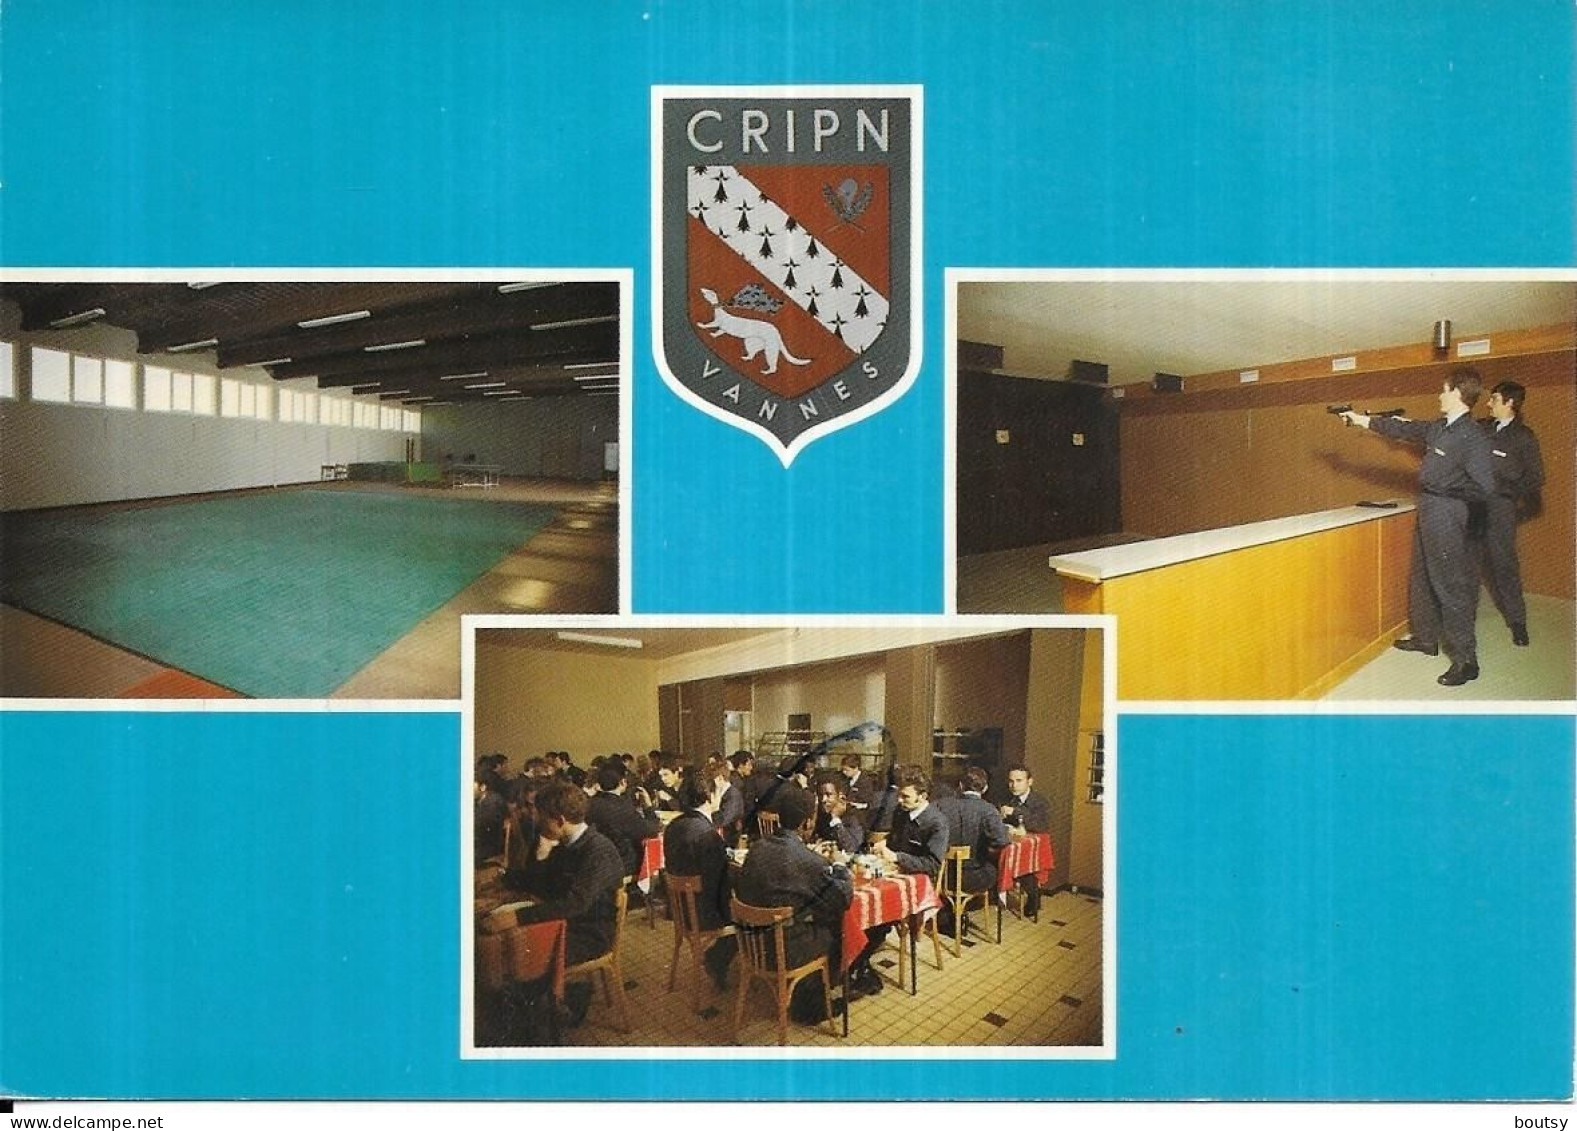 CRIPN - Polizei - Gendarmerie